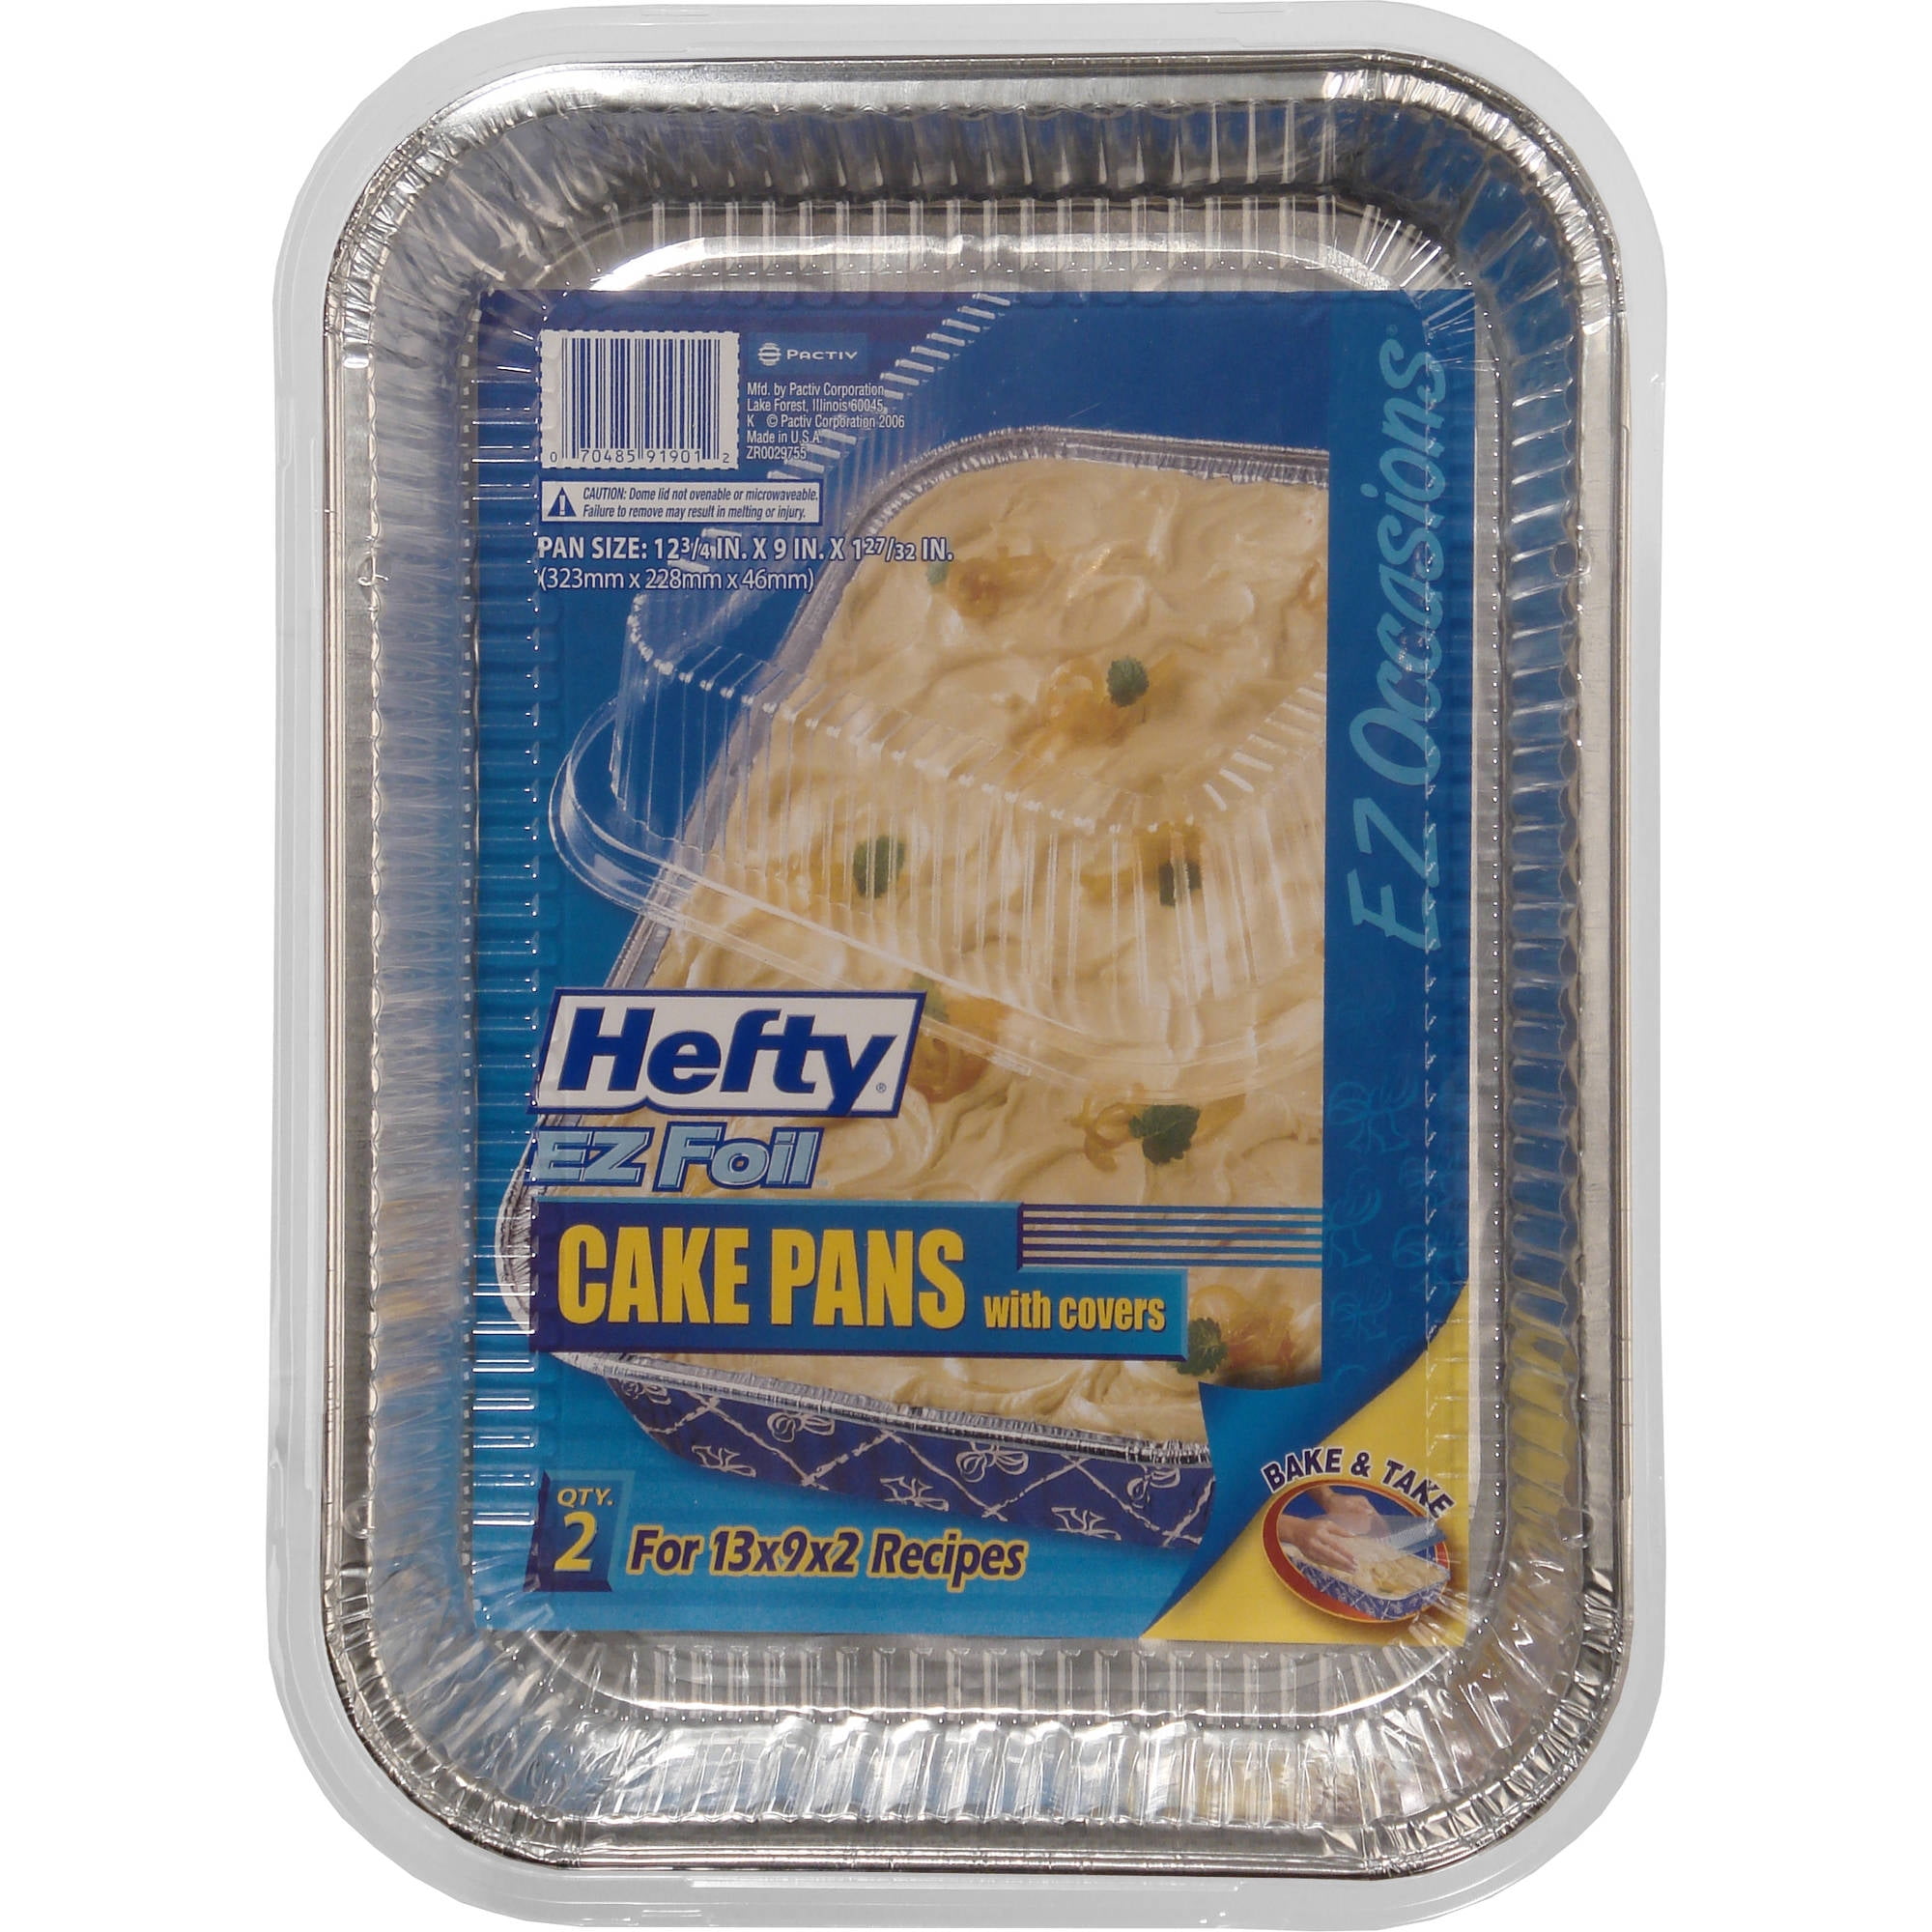 Jiffy-Foil 13 x 9 Inches Cake Pan & Lid 1 ea Bulk Case 36